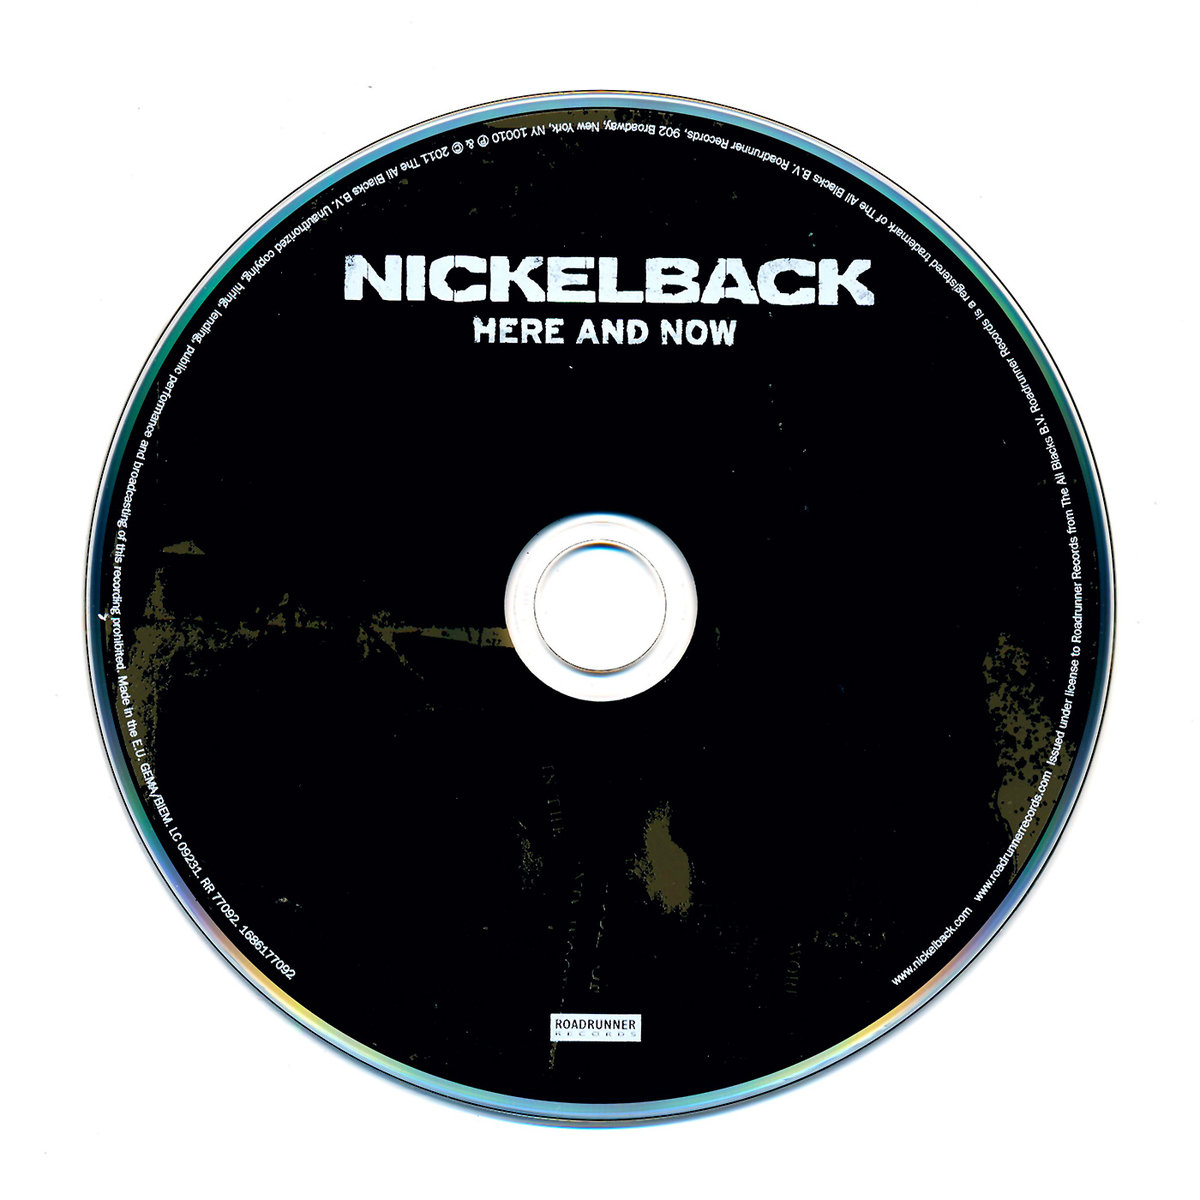 Nickelback альбомы. Nickelback обложки альбомов. Nickelback here and Now. Here and Now альбом. Nickelback 2011.